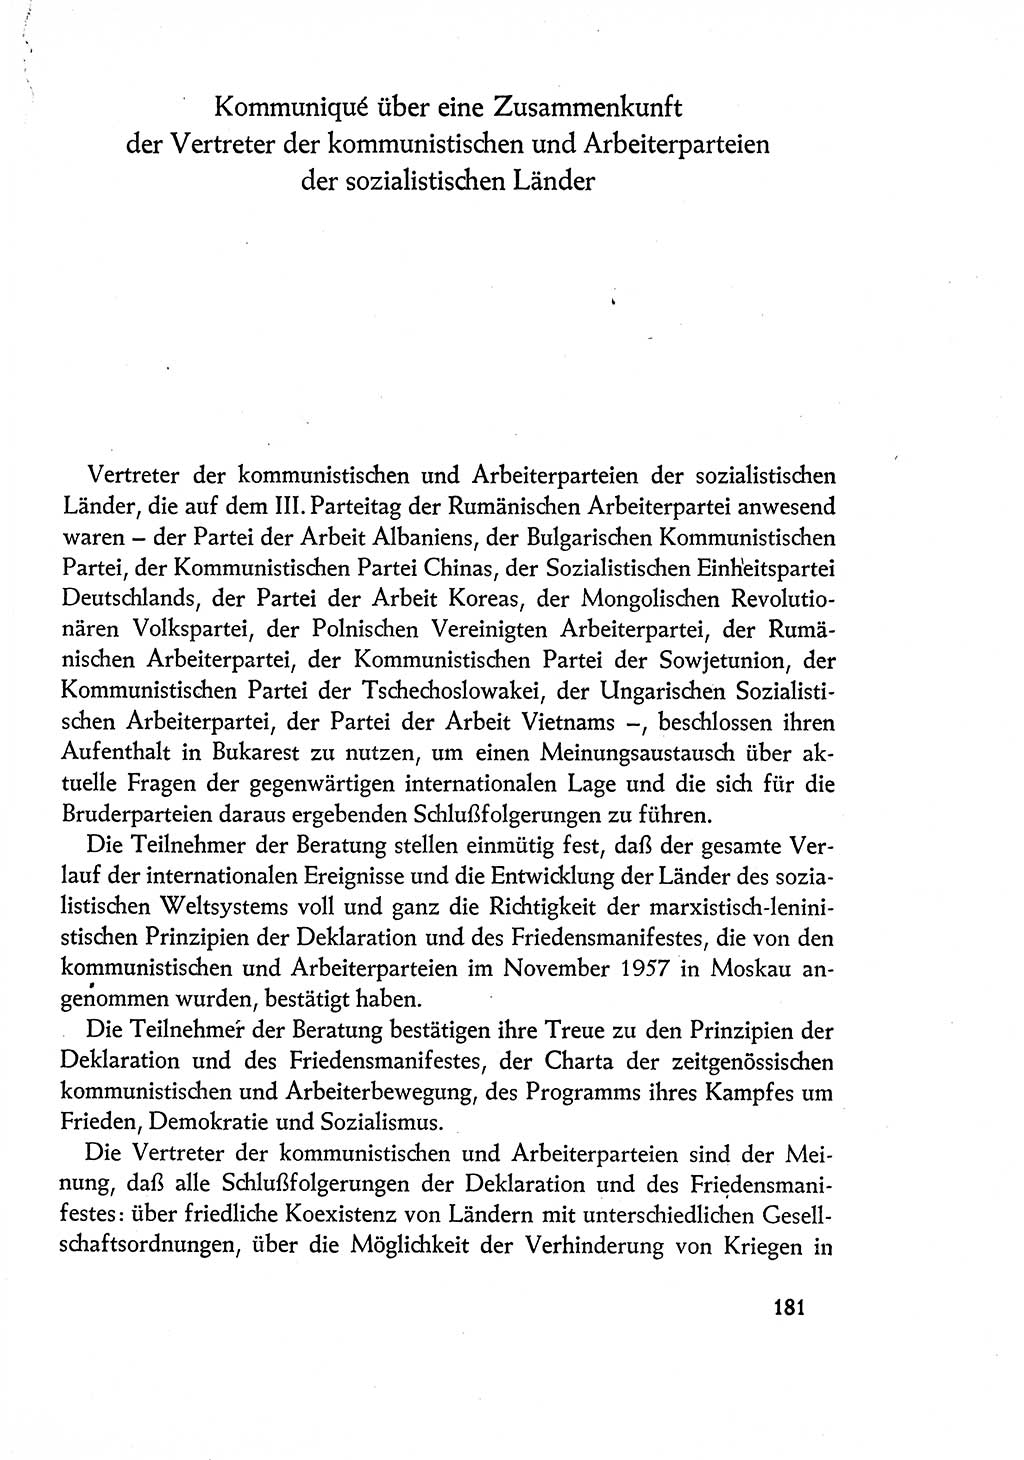 Dokumente der Sozialistischen Einheitspartei Deutschlands (SED) [Deutsche Demokratische Republik (DDR)] 1960-1961, Seite 181 (Dok. SED DDR 1960-1961, S. 181)